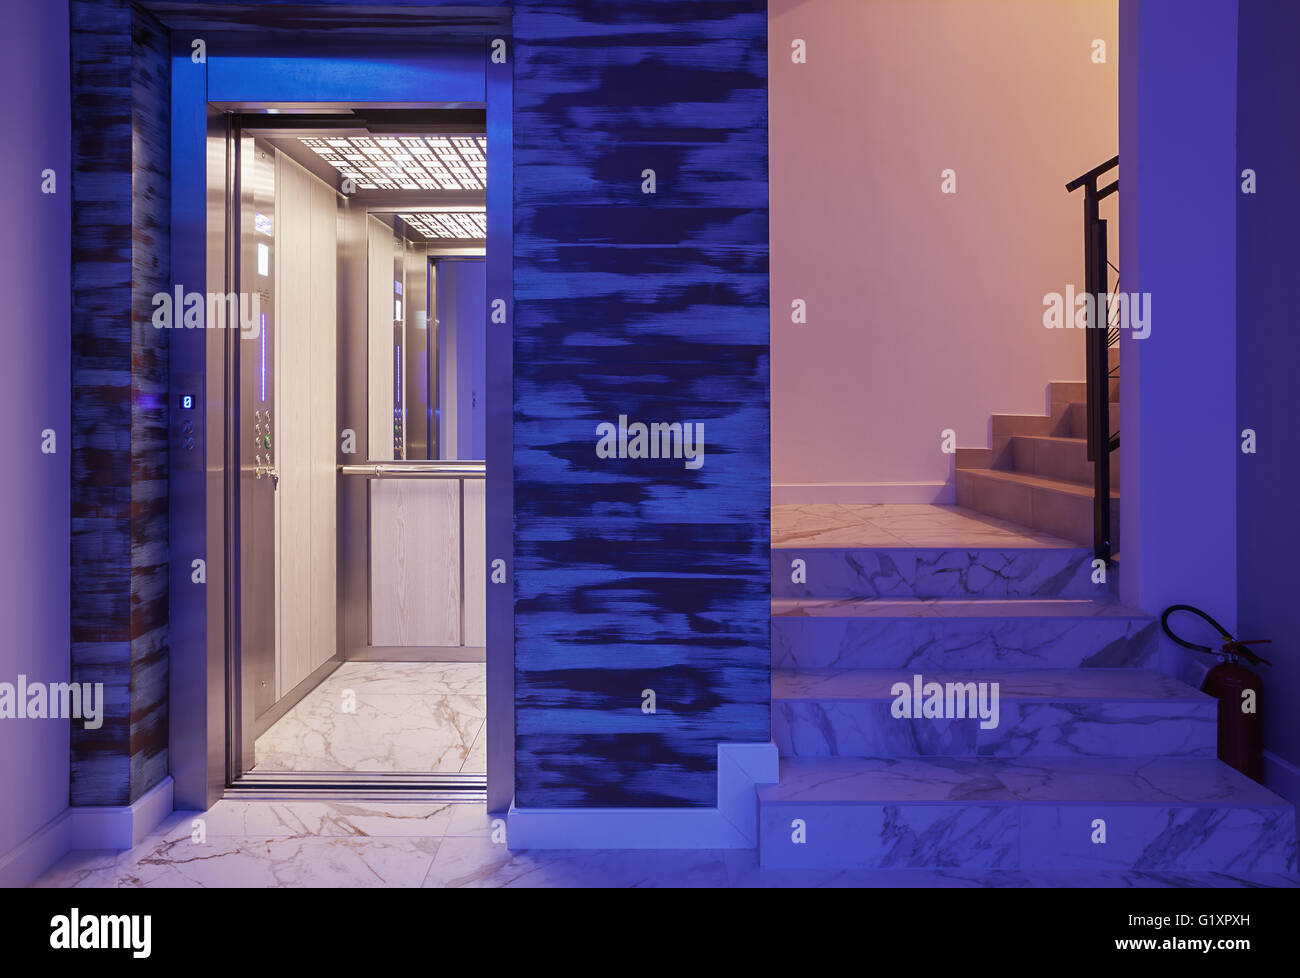 Detalles del hotel, ascensor y escaleras, iluminación azul, el diseño de interiores. Foto de stock